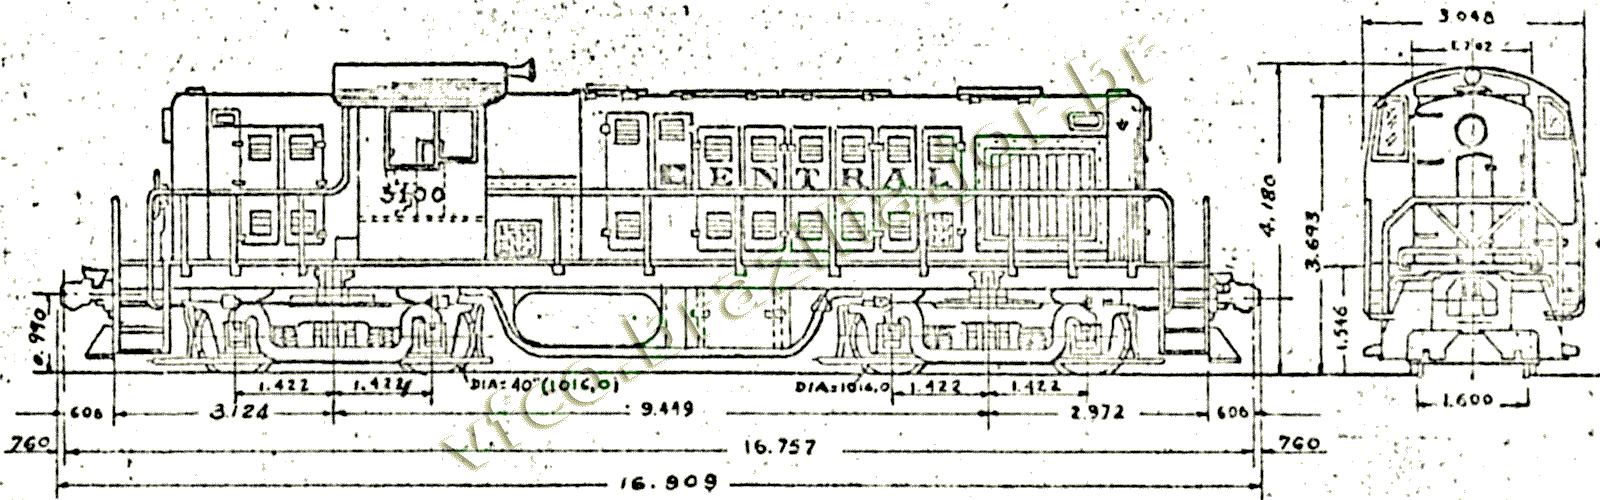 Desenho e medidas da Locomotiva Alco RS-1